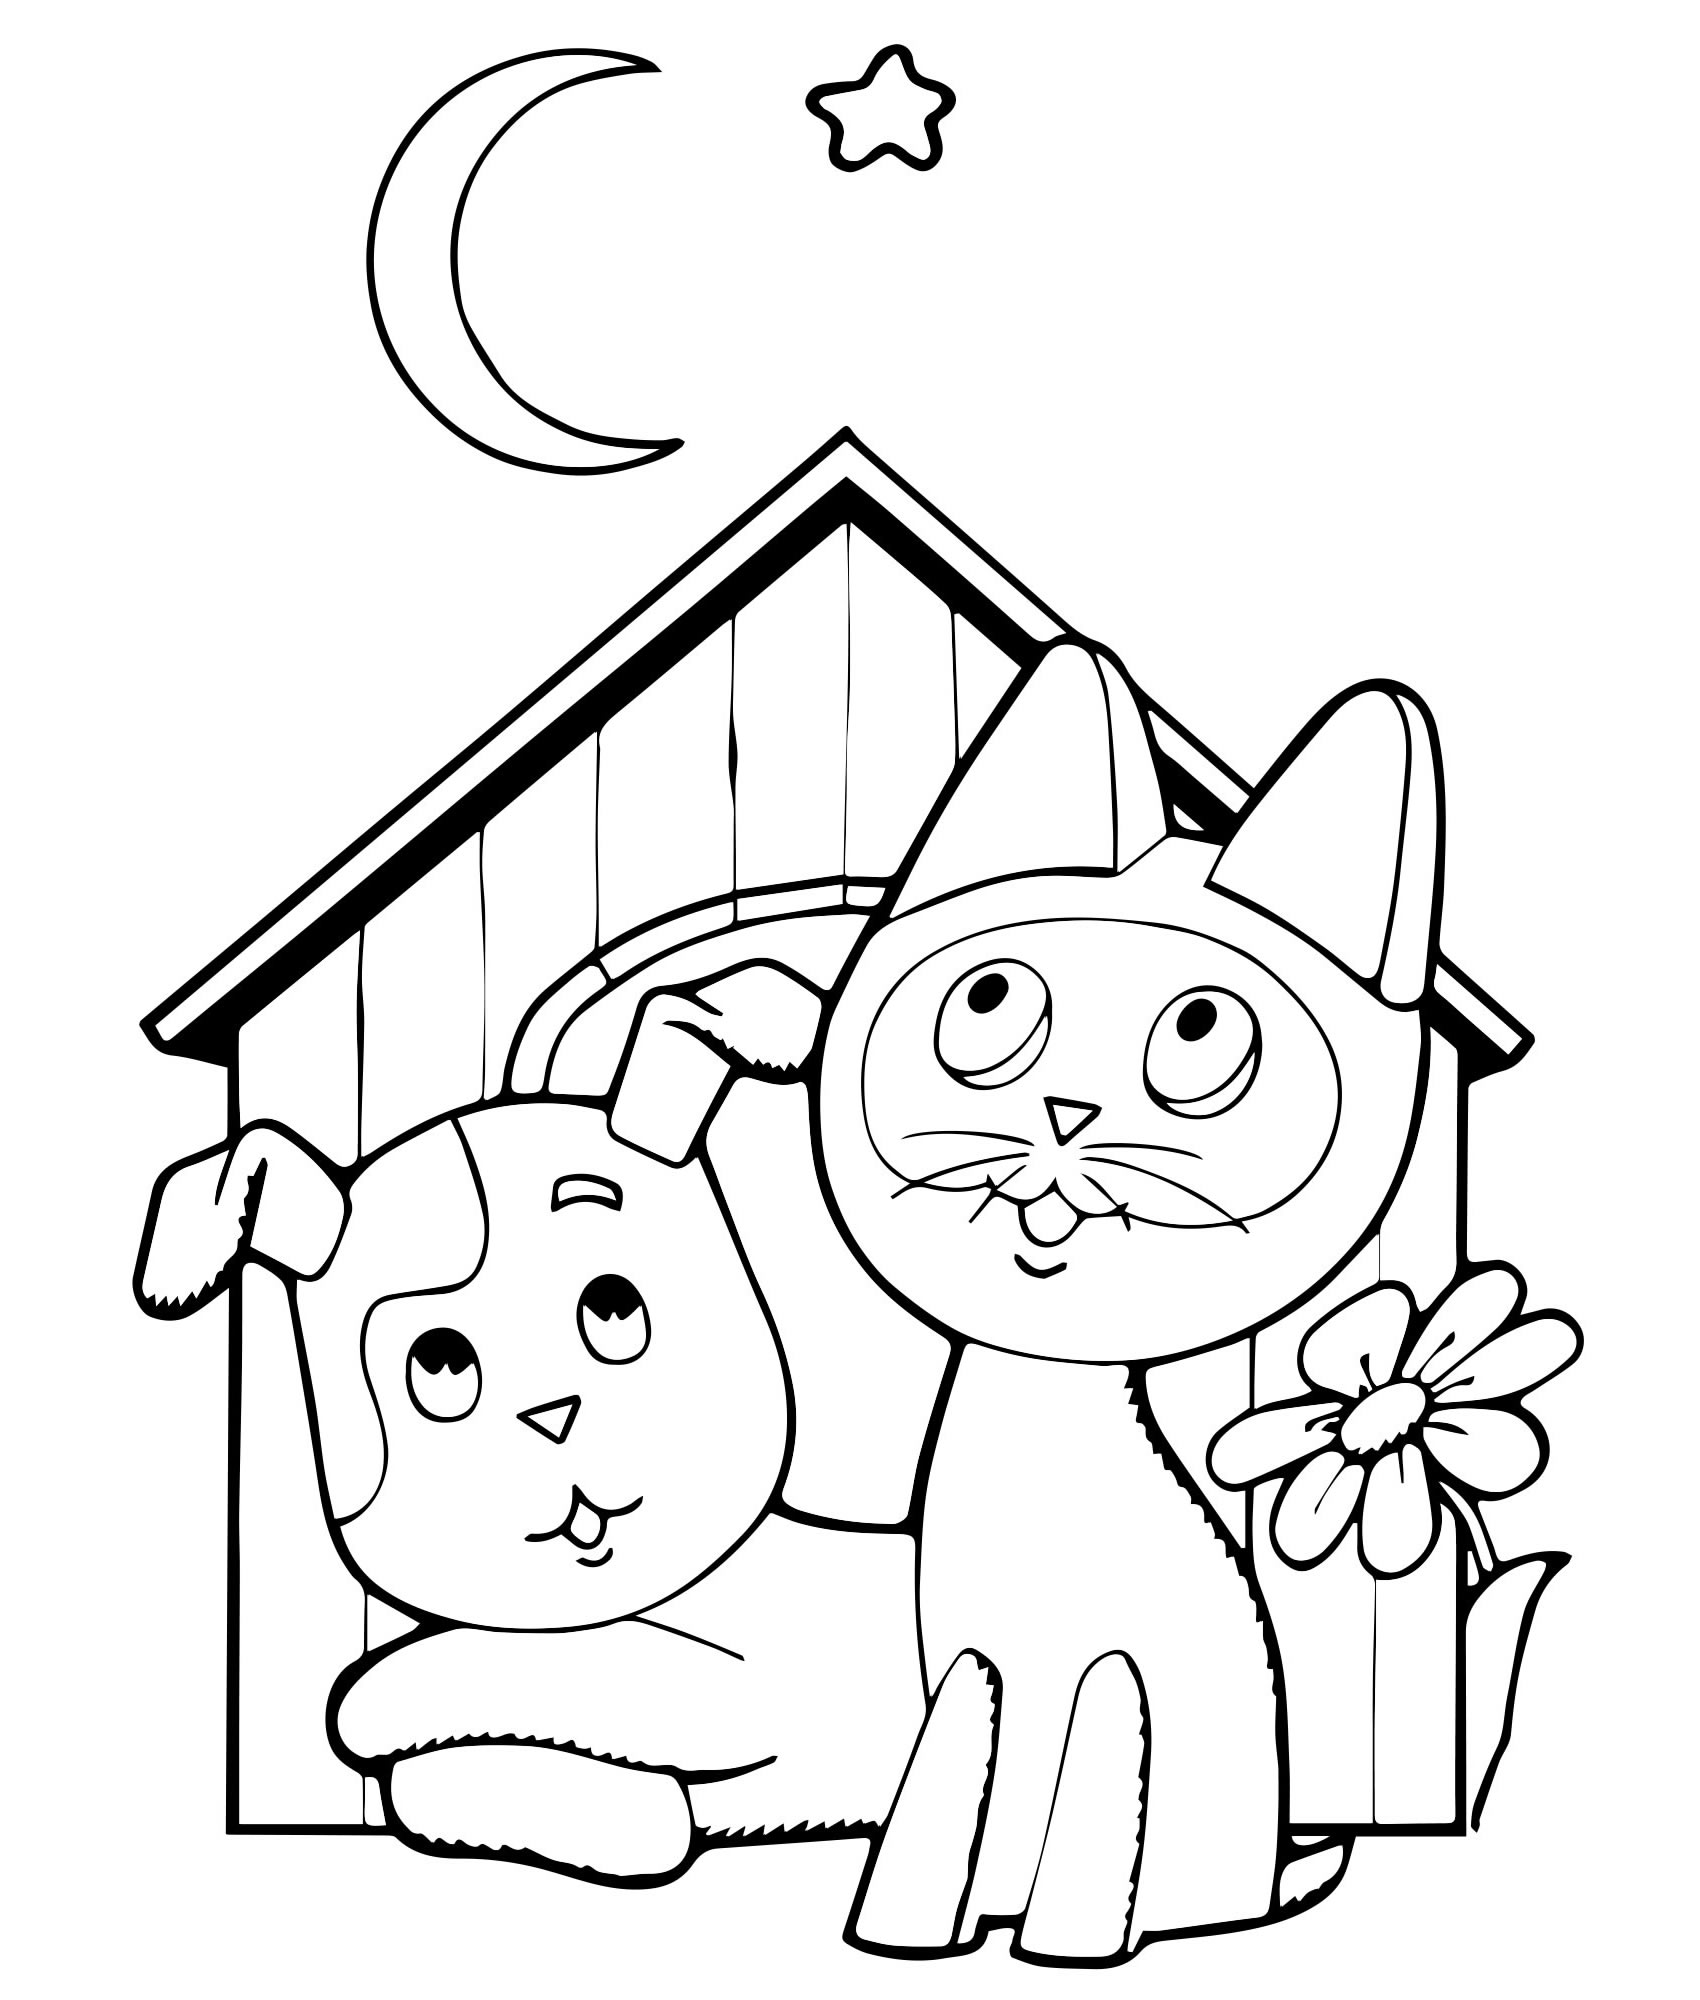 Котенок Гав и щенок в будке — раскраска для детей. Распечатать бесплатно.